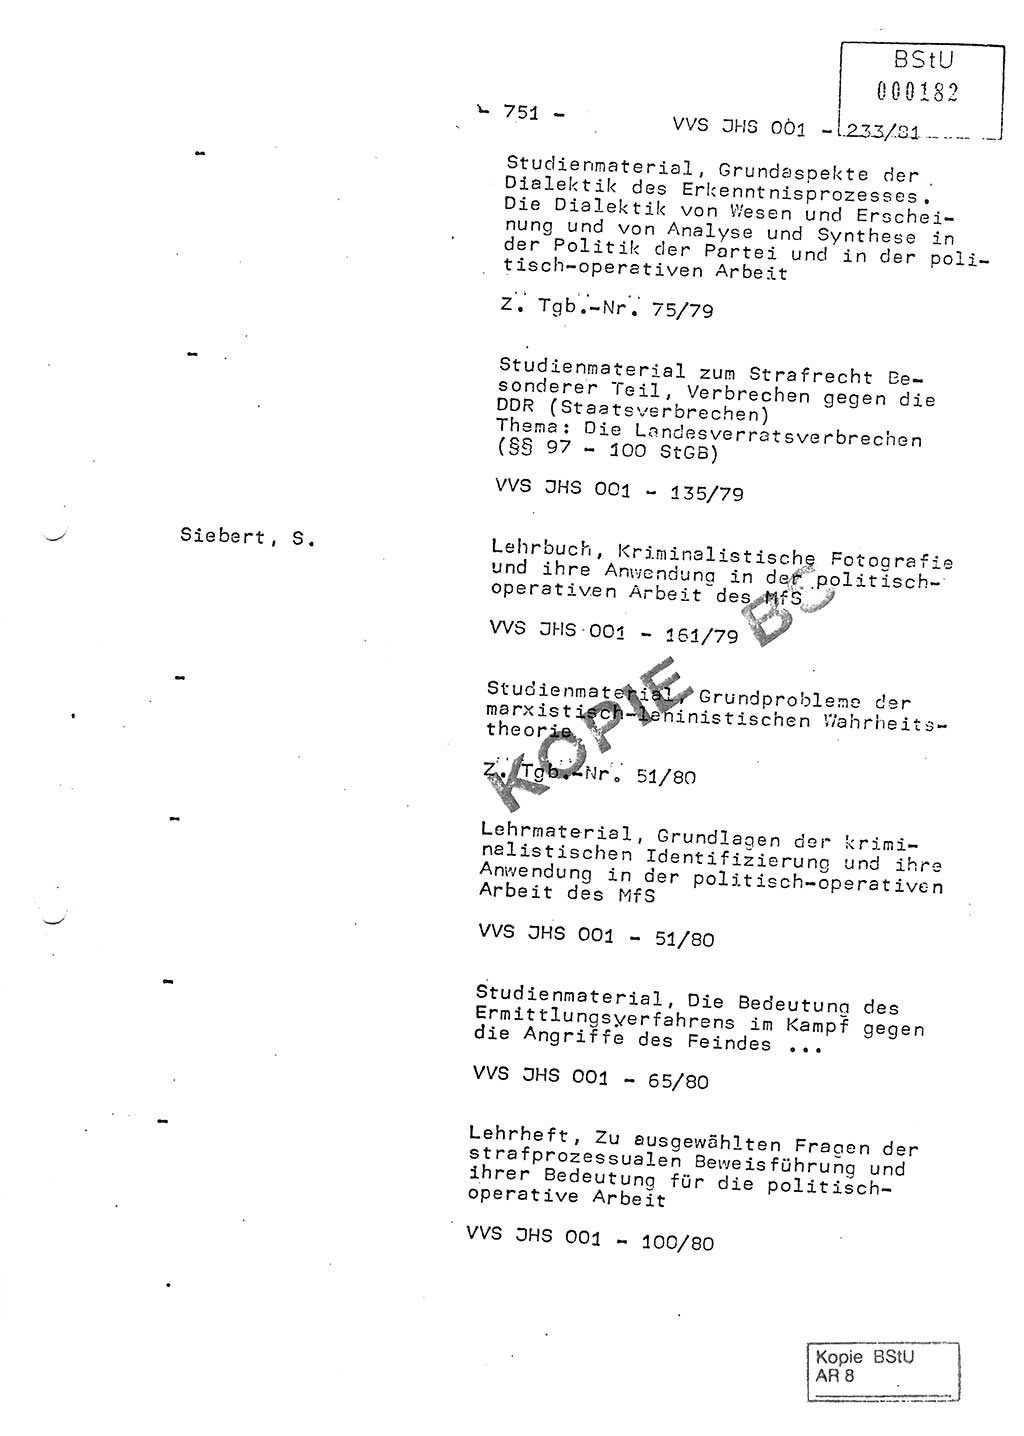 Dissertation Oberstleutnant Horst Zank (JHS), Oberstleutnant Dr. Karl-Heinz Knoblauch (JHS), Oberstleutnant Gustav-Adolf Kowalewski (HA Ⅸ), Oberstleutnant Wolfgang Plötner (HA Ⅸ), Ministerium für Staatssicherheit (MfS) [Deutsche Demokratische Republik (DDR)], Juristische Hochschule (JHS), Vertrauliche Verschlußsache (VVS) o001-233/81, Potsdam 1981, Blatt 751 (Diss. MfS DDR JHS VVS o001-233/81 1981, Bl. 751)